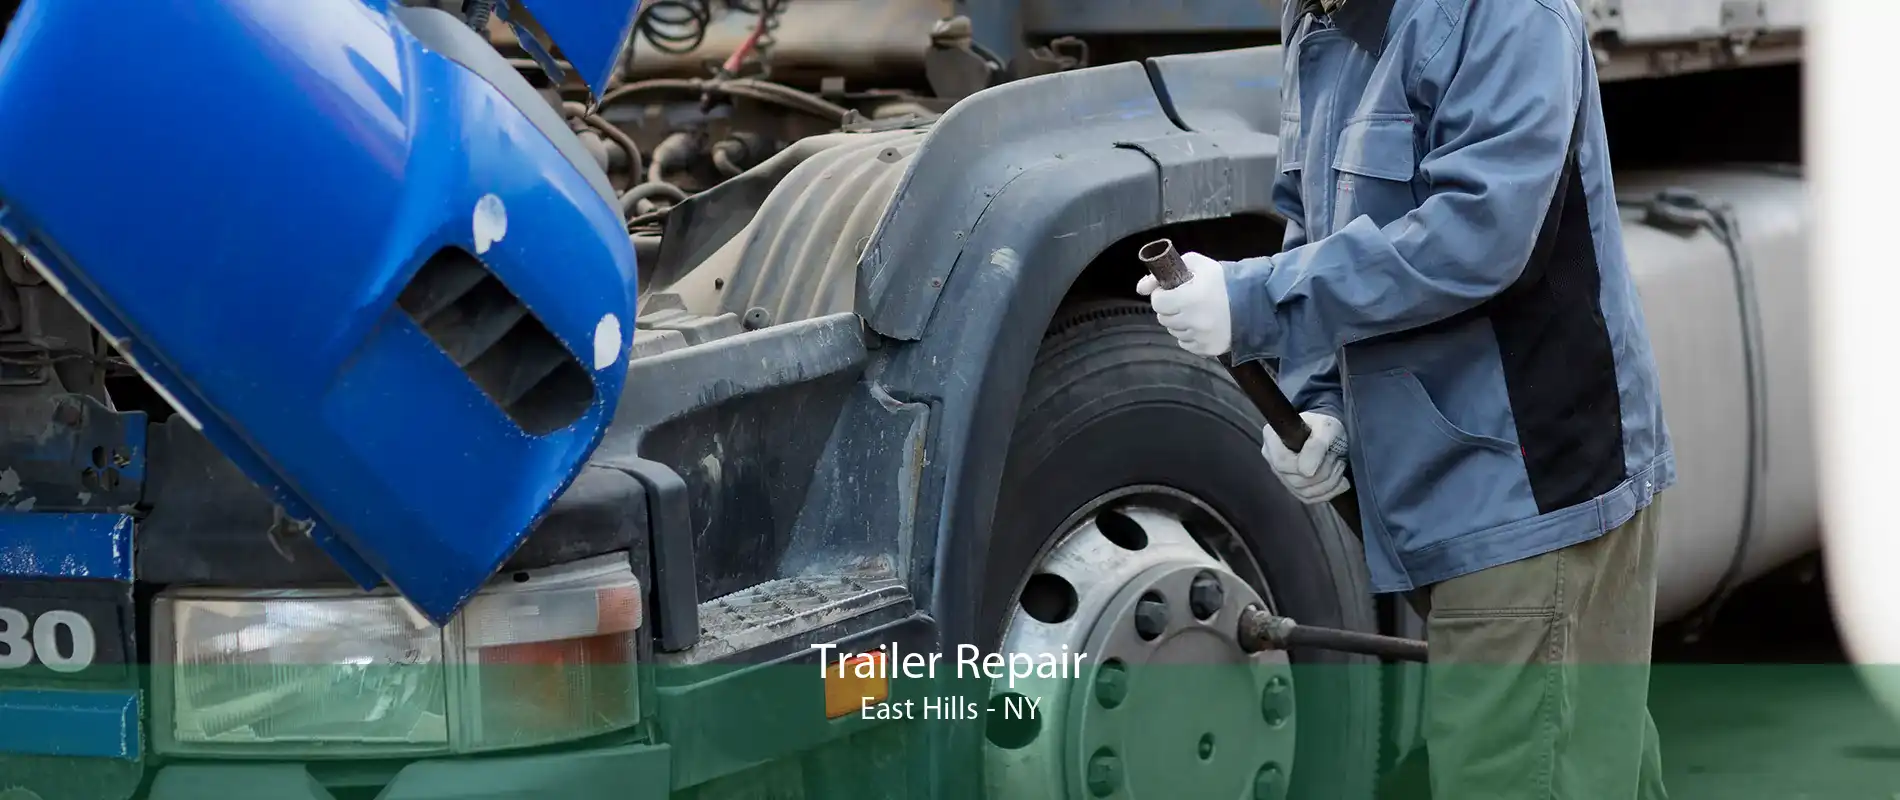 Trailer Repair East Hills - NY